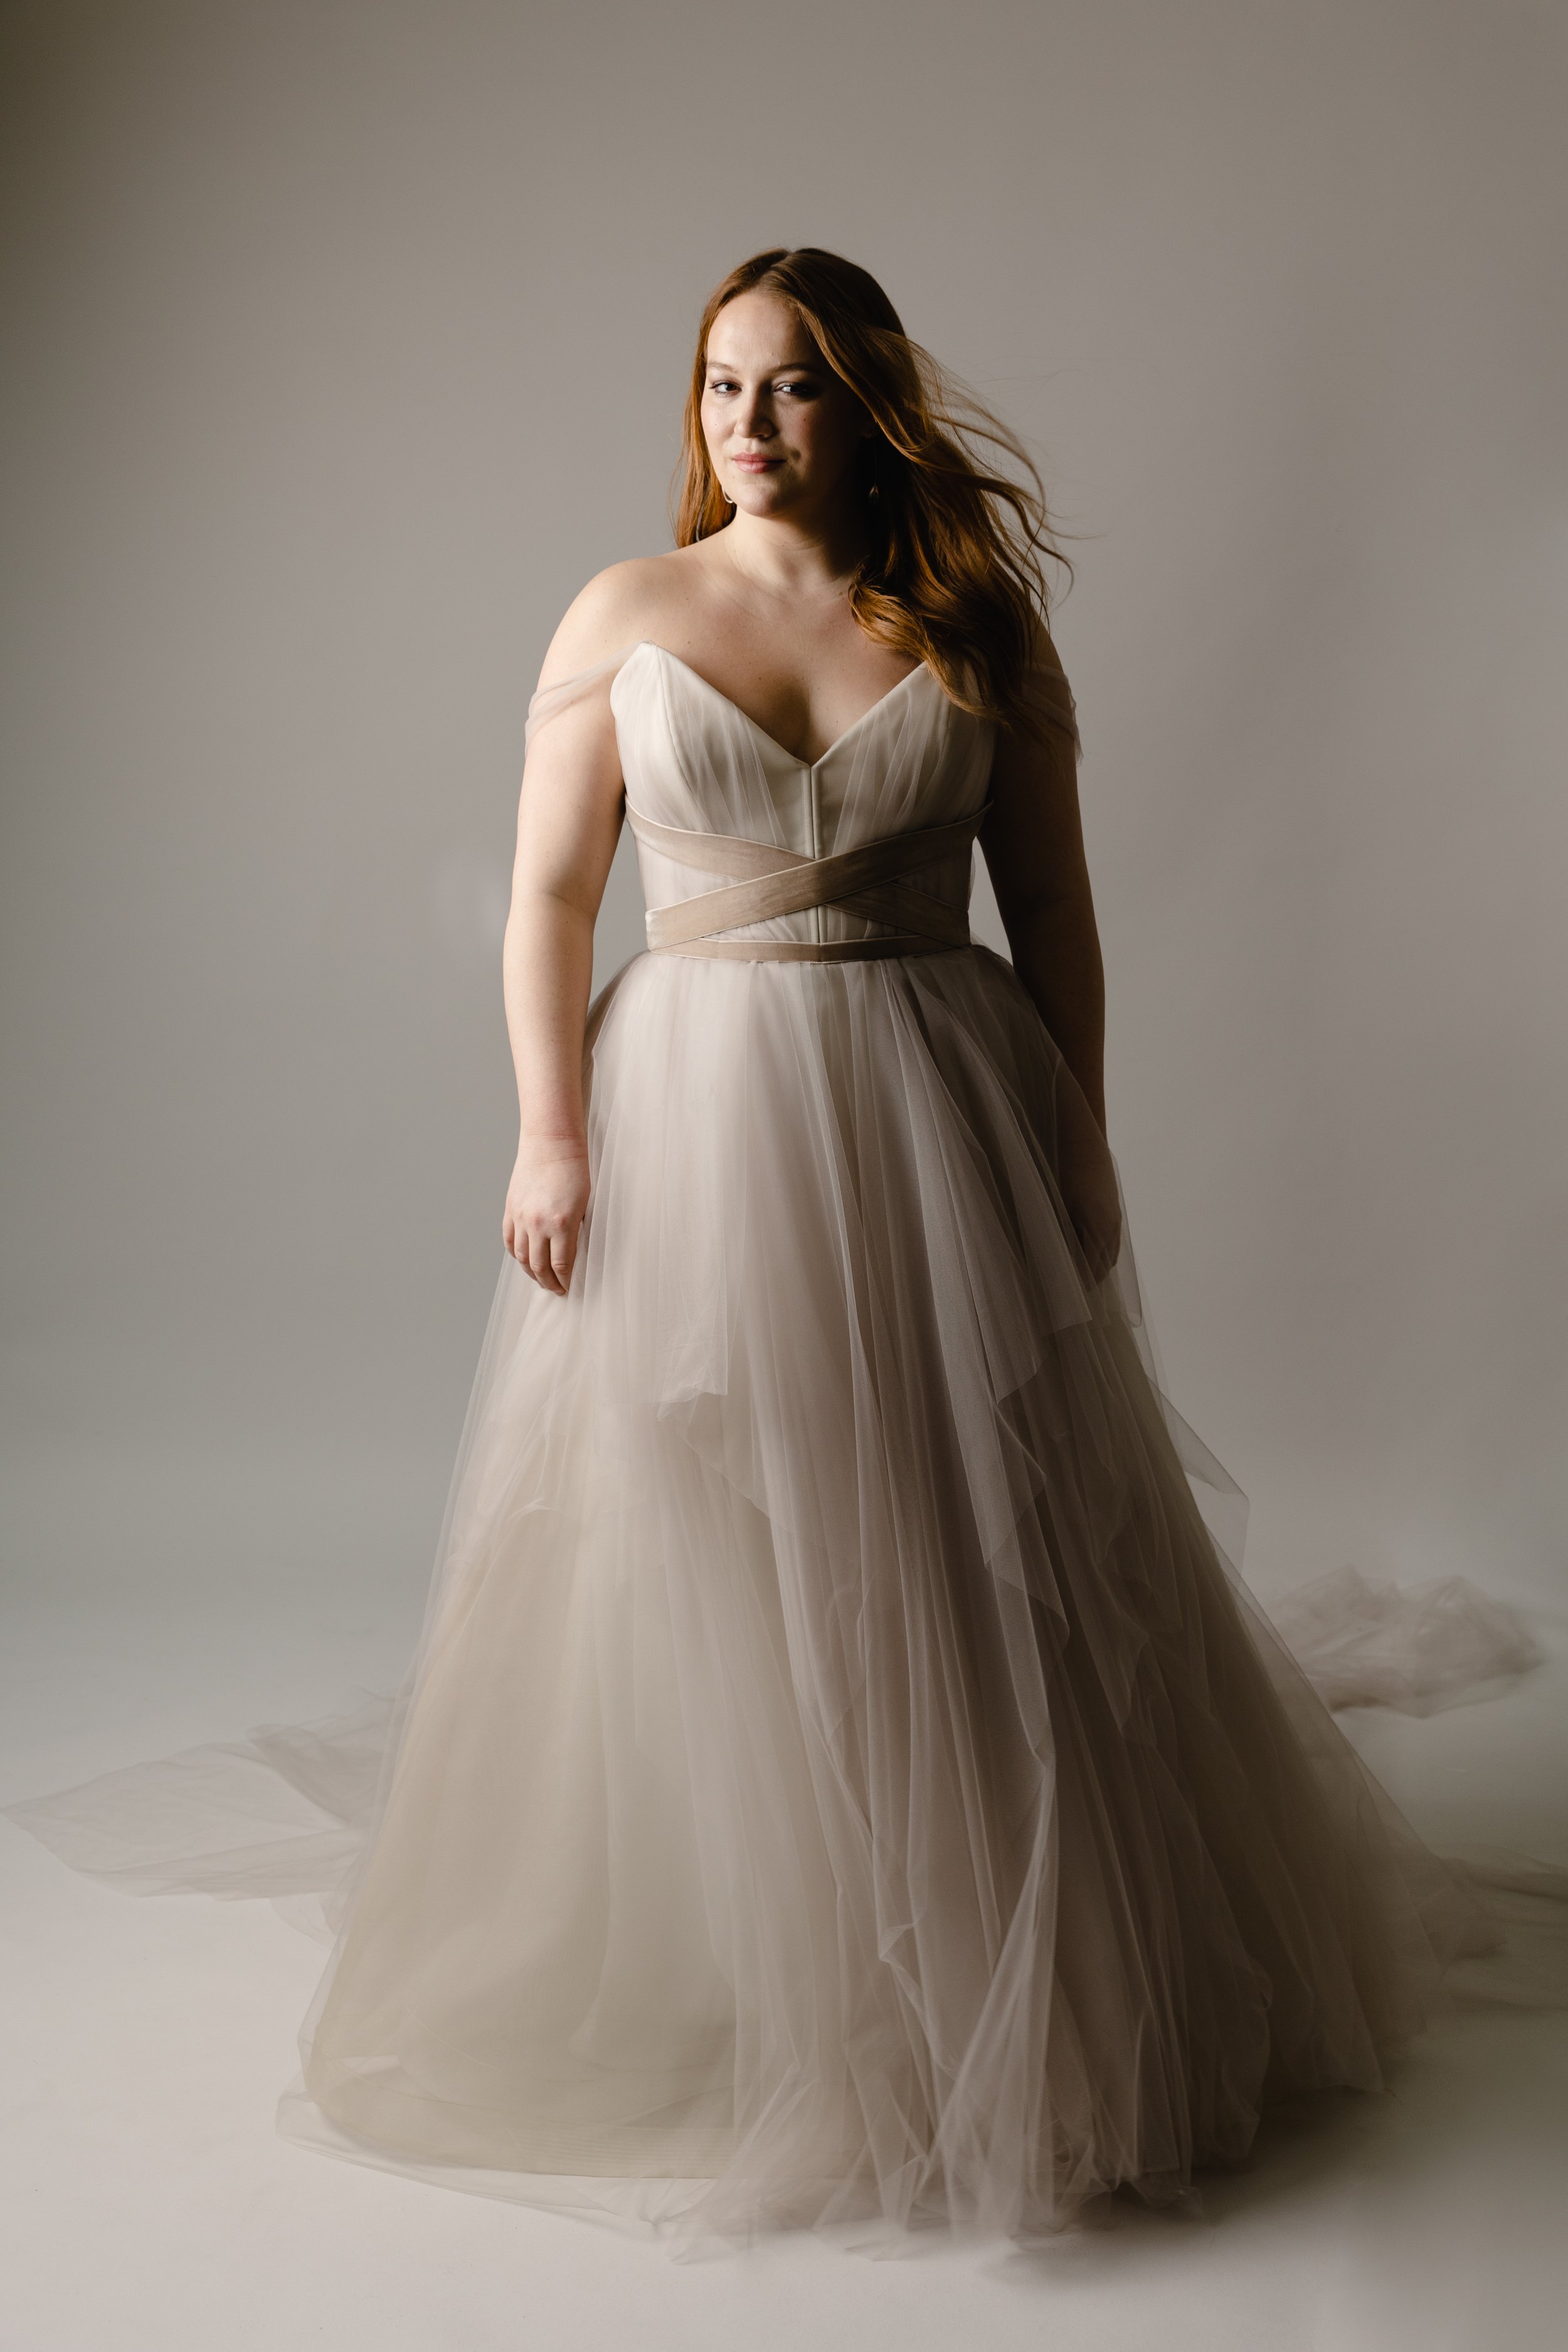 Sfumato draped tulle a-line wedding dress ballet inspired1.jpg